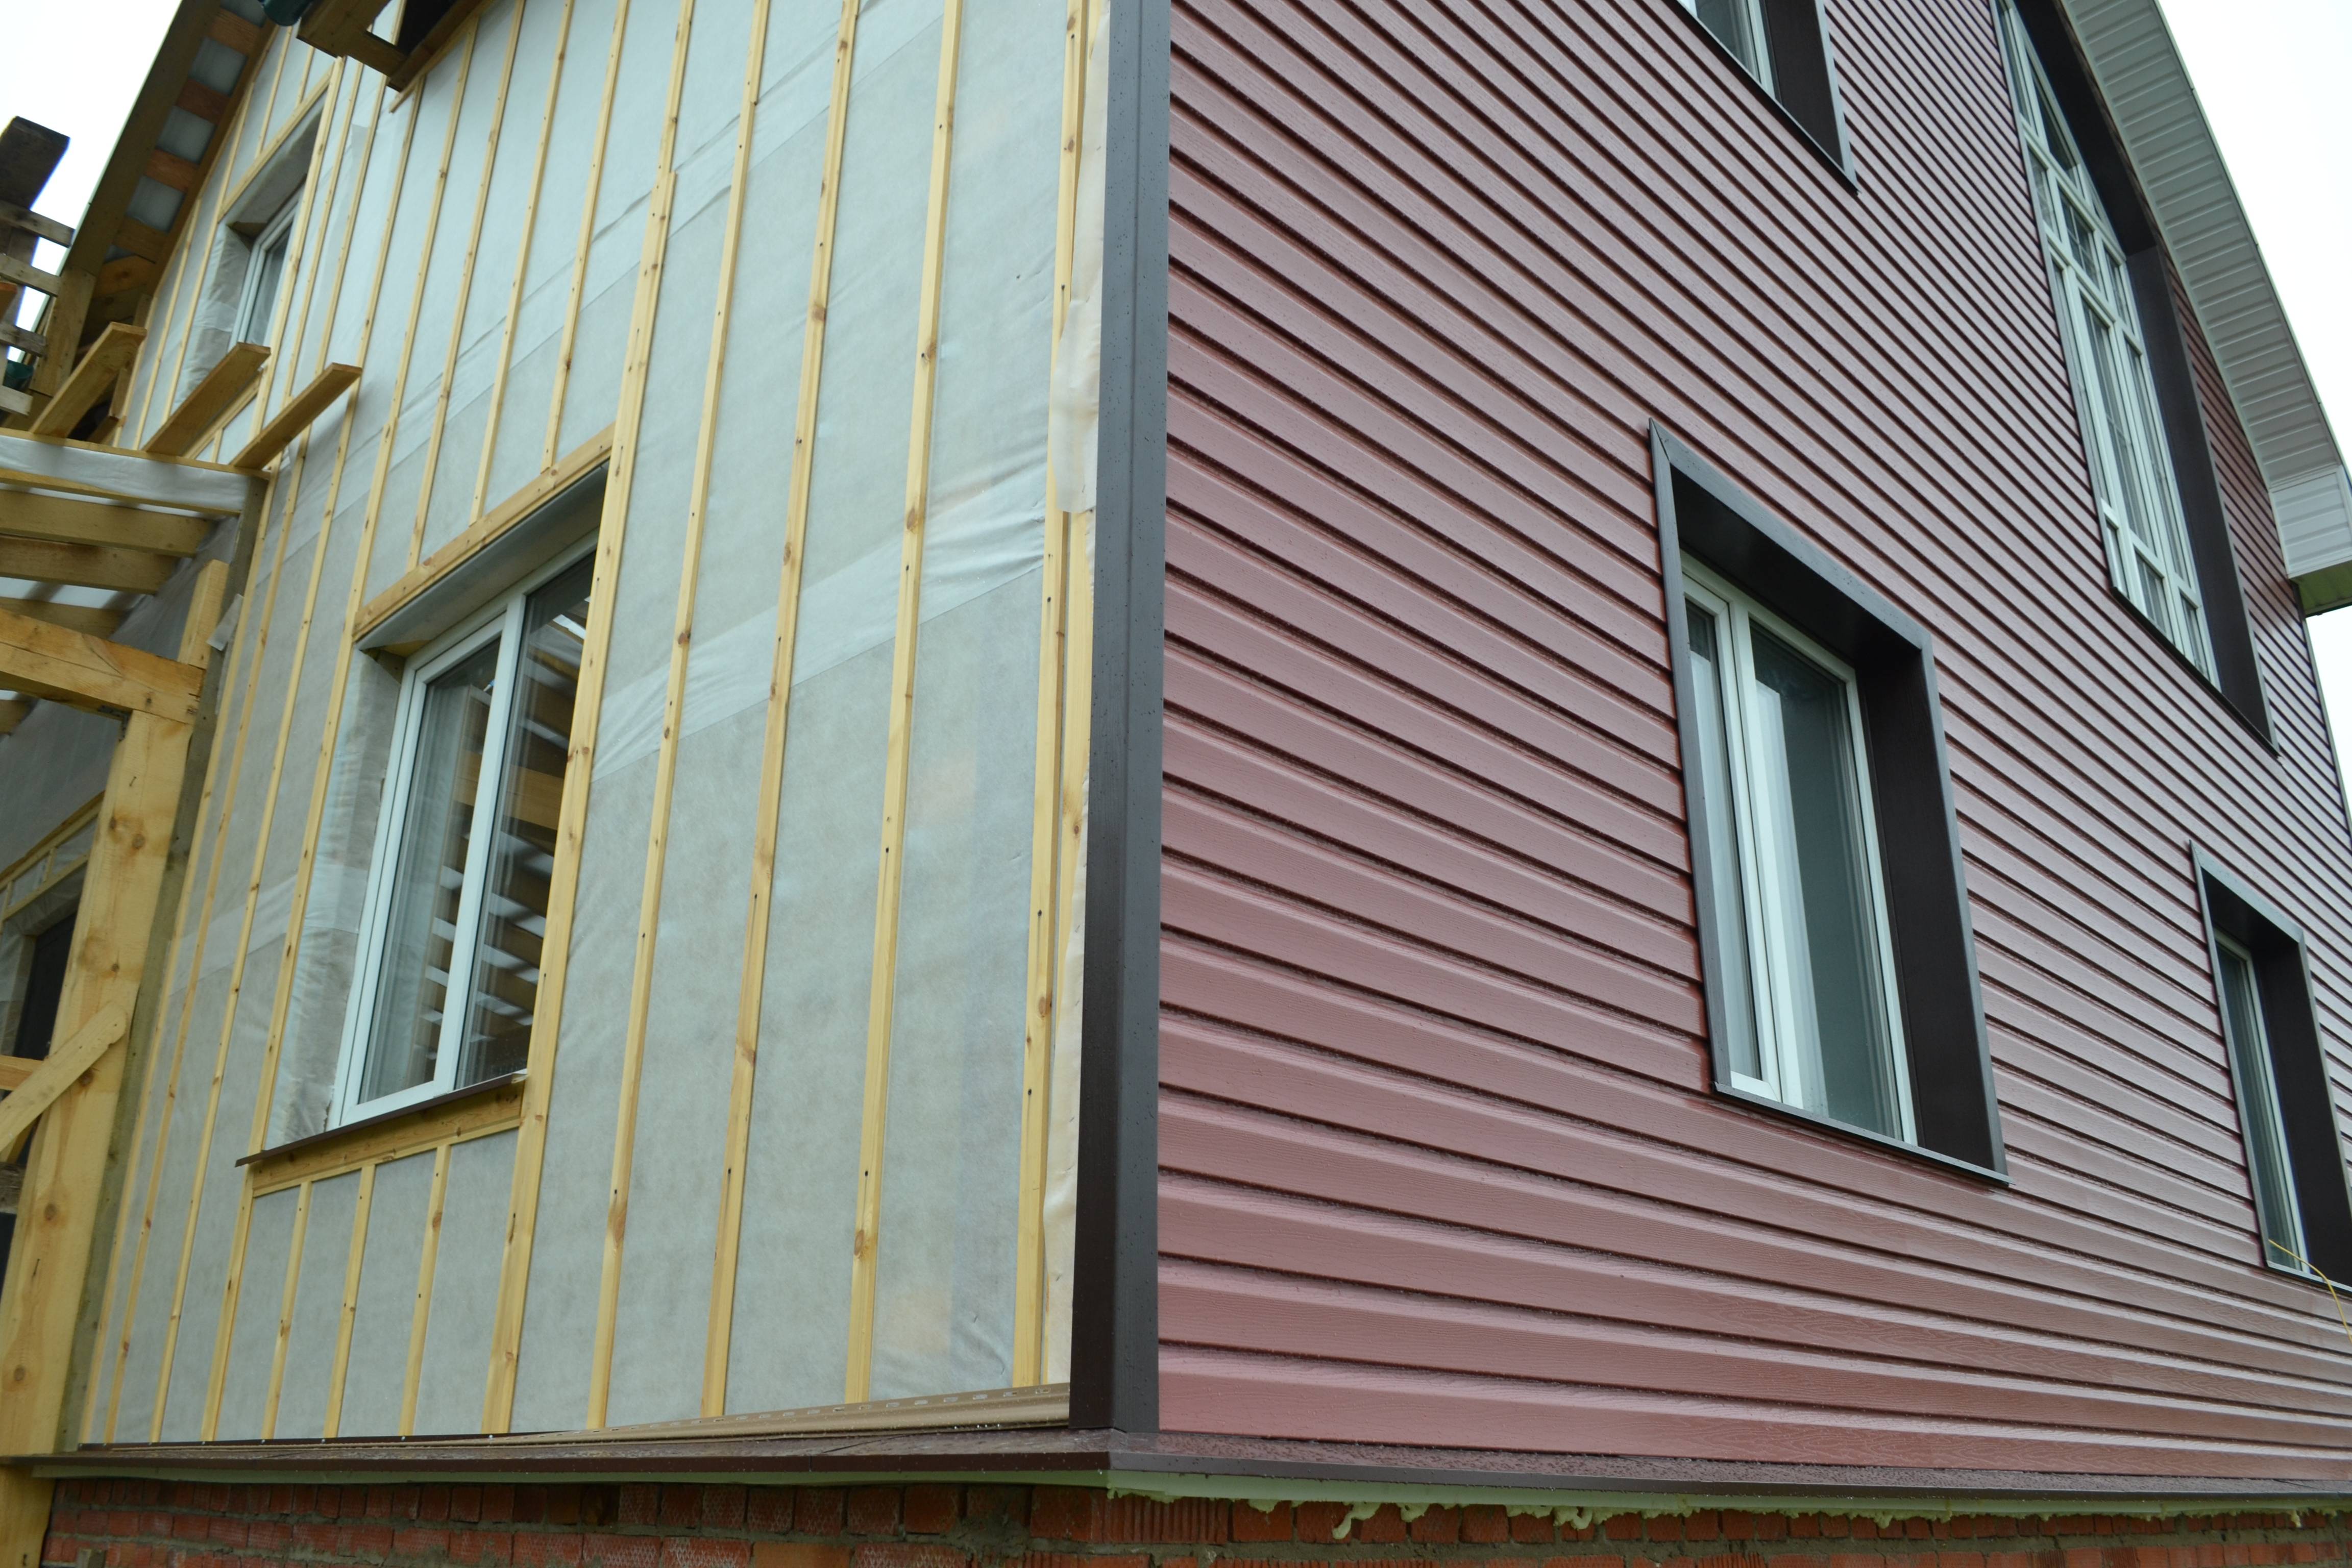 Утепление деревянного дома снаружи минватой под сайдинг: пошаговая инструкция